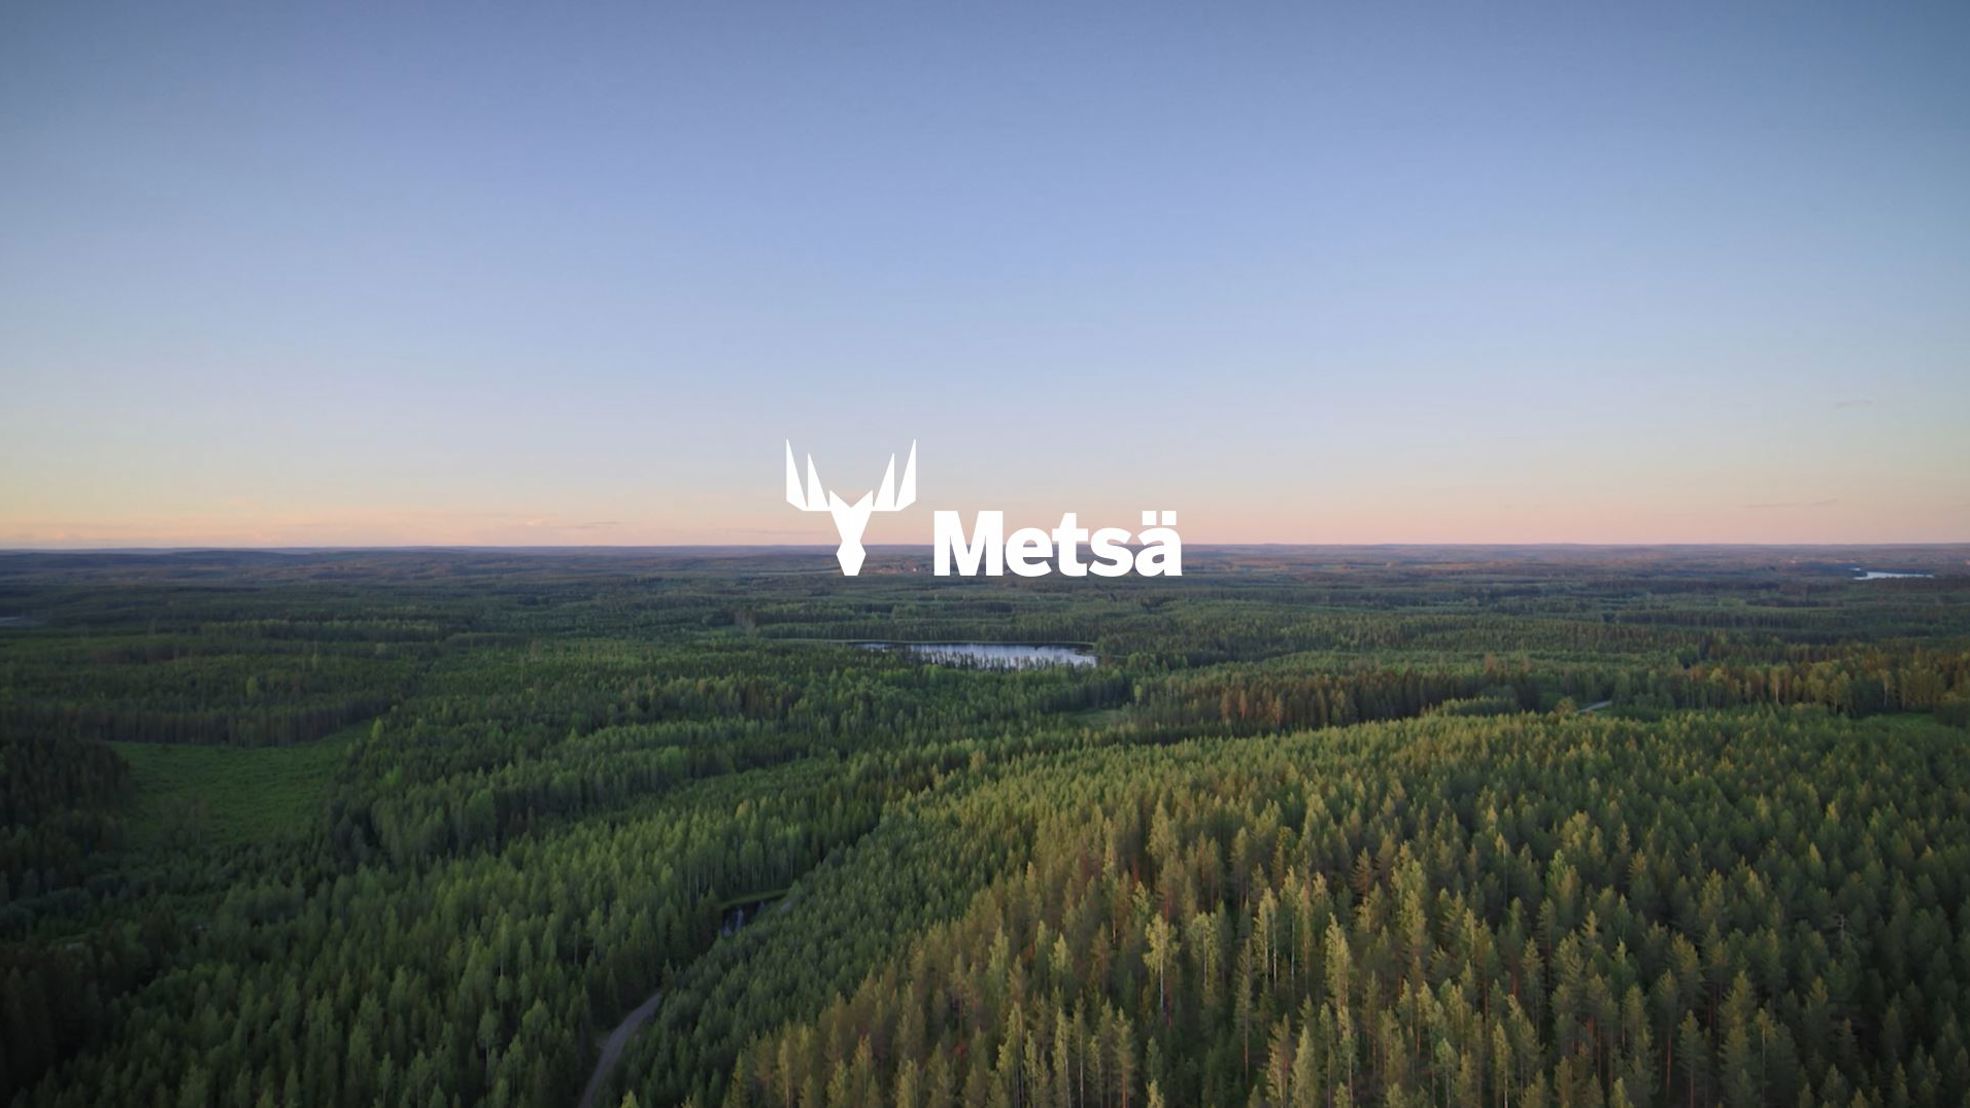 Metsä Wood's brand video